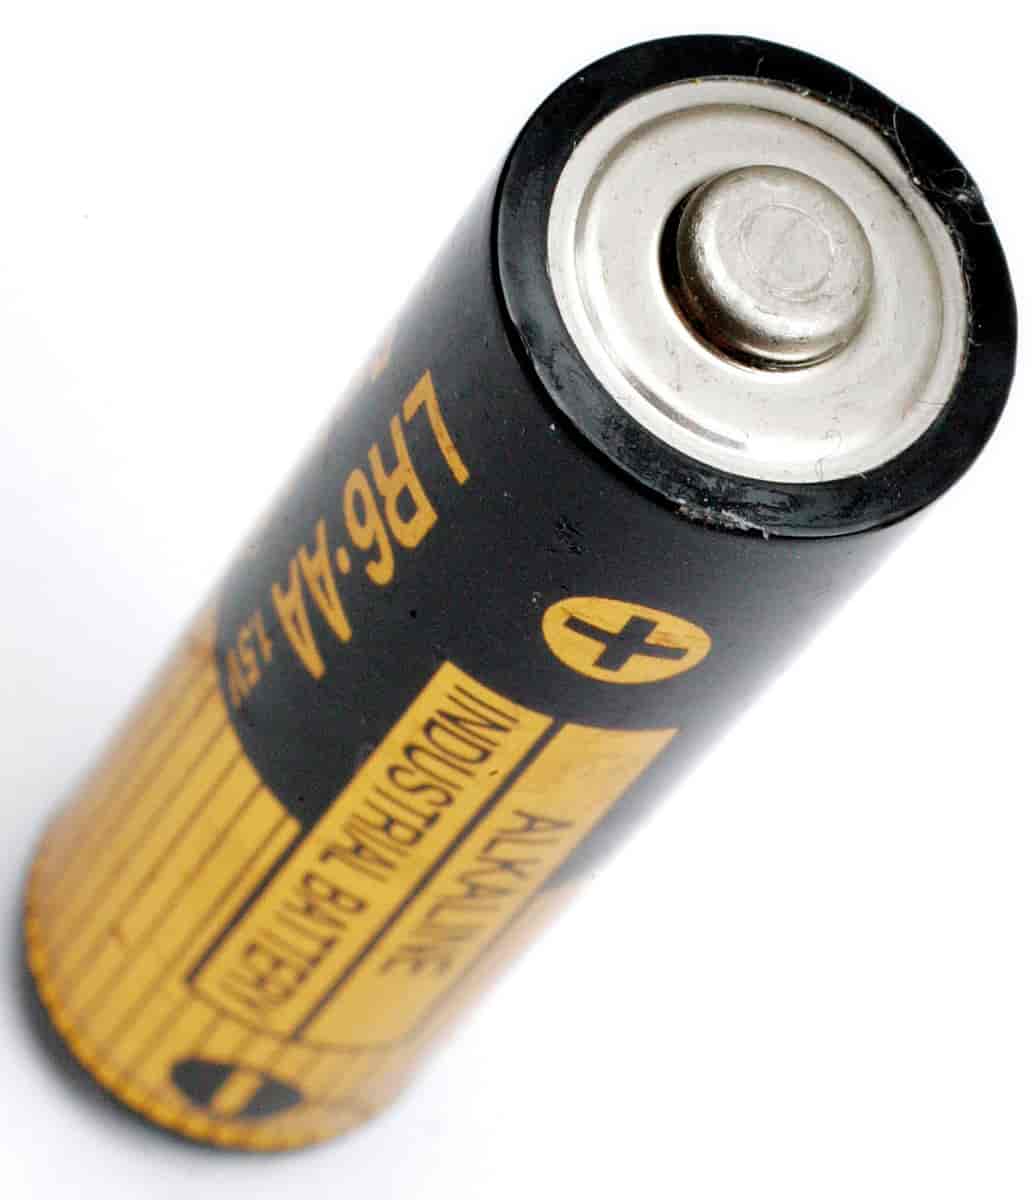 Nærbilde av et avlangt, rundt batteri i svart og gult. Det står Alkaline og AA på batteriet.